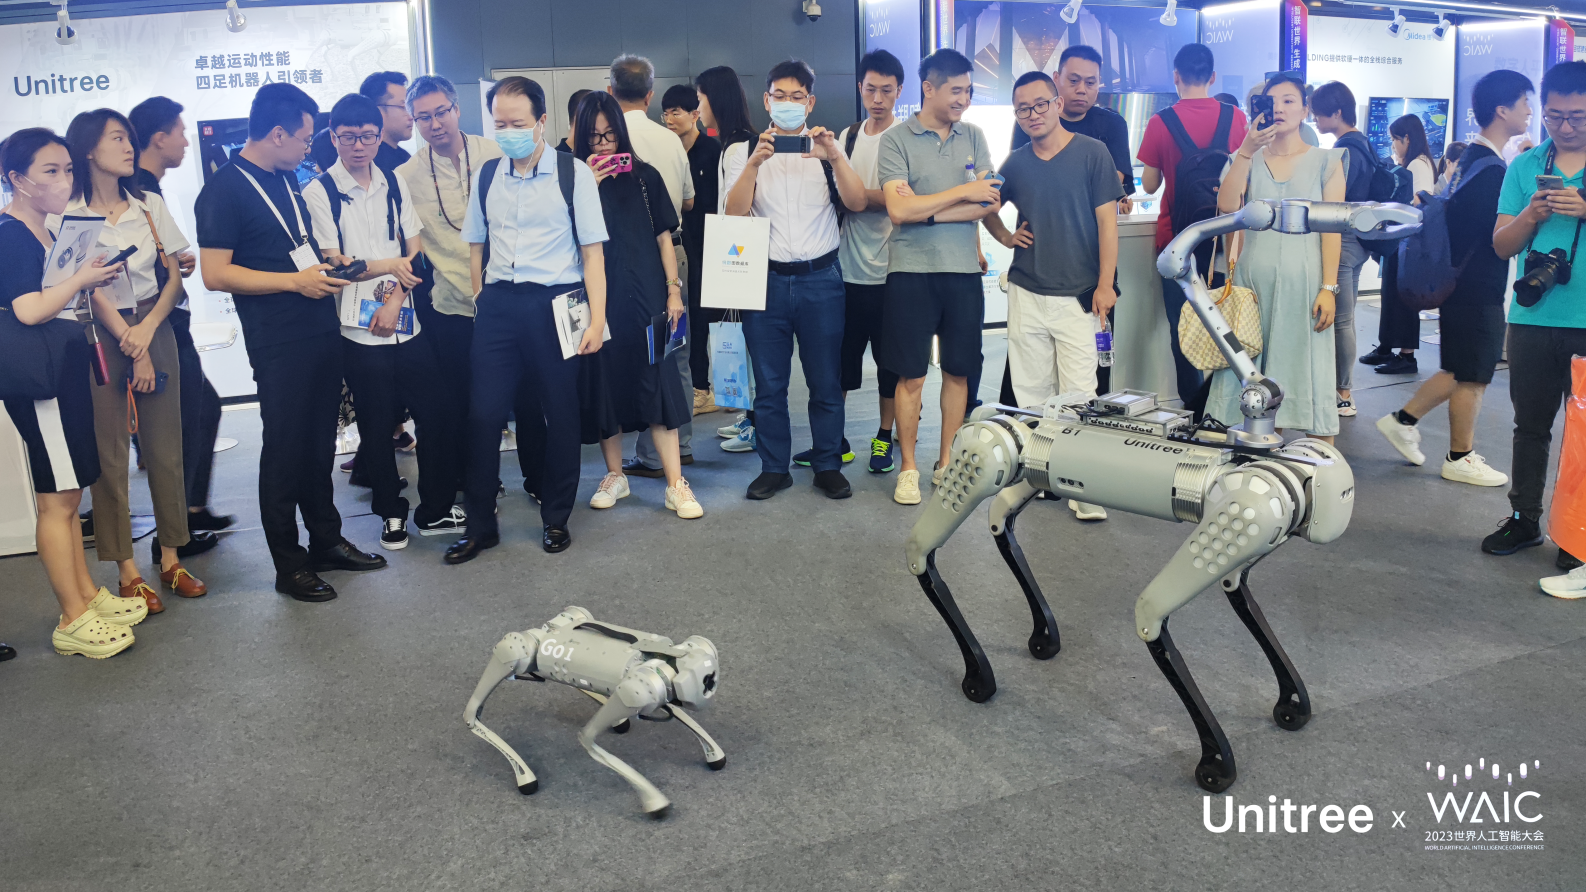 宇树四足机器人在世界人工智能大会上获得广泛关注